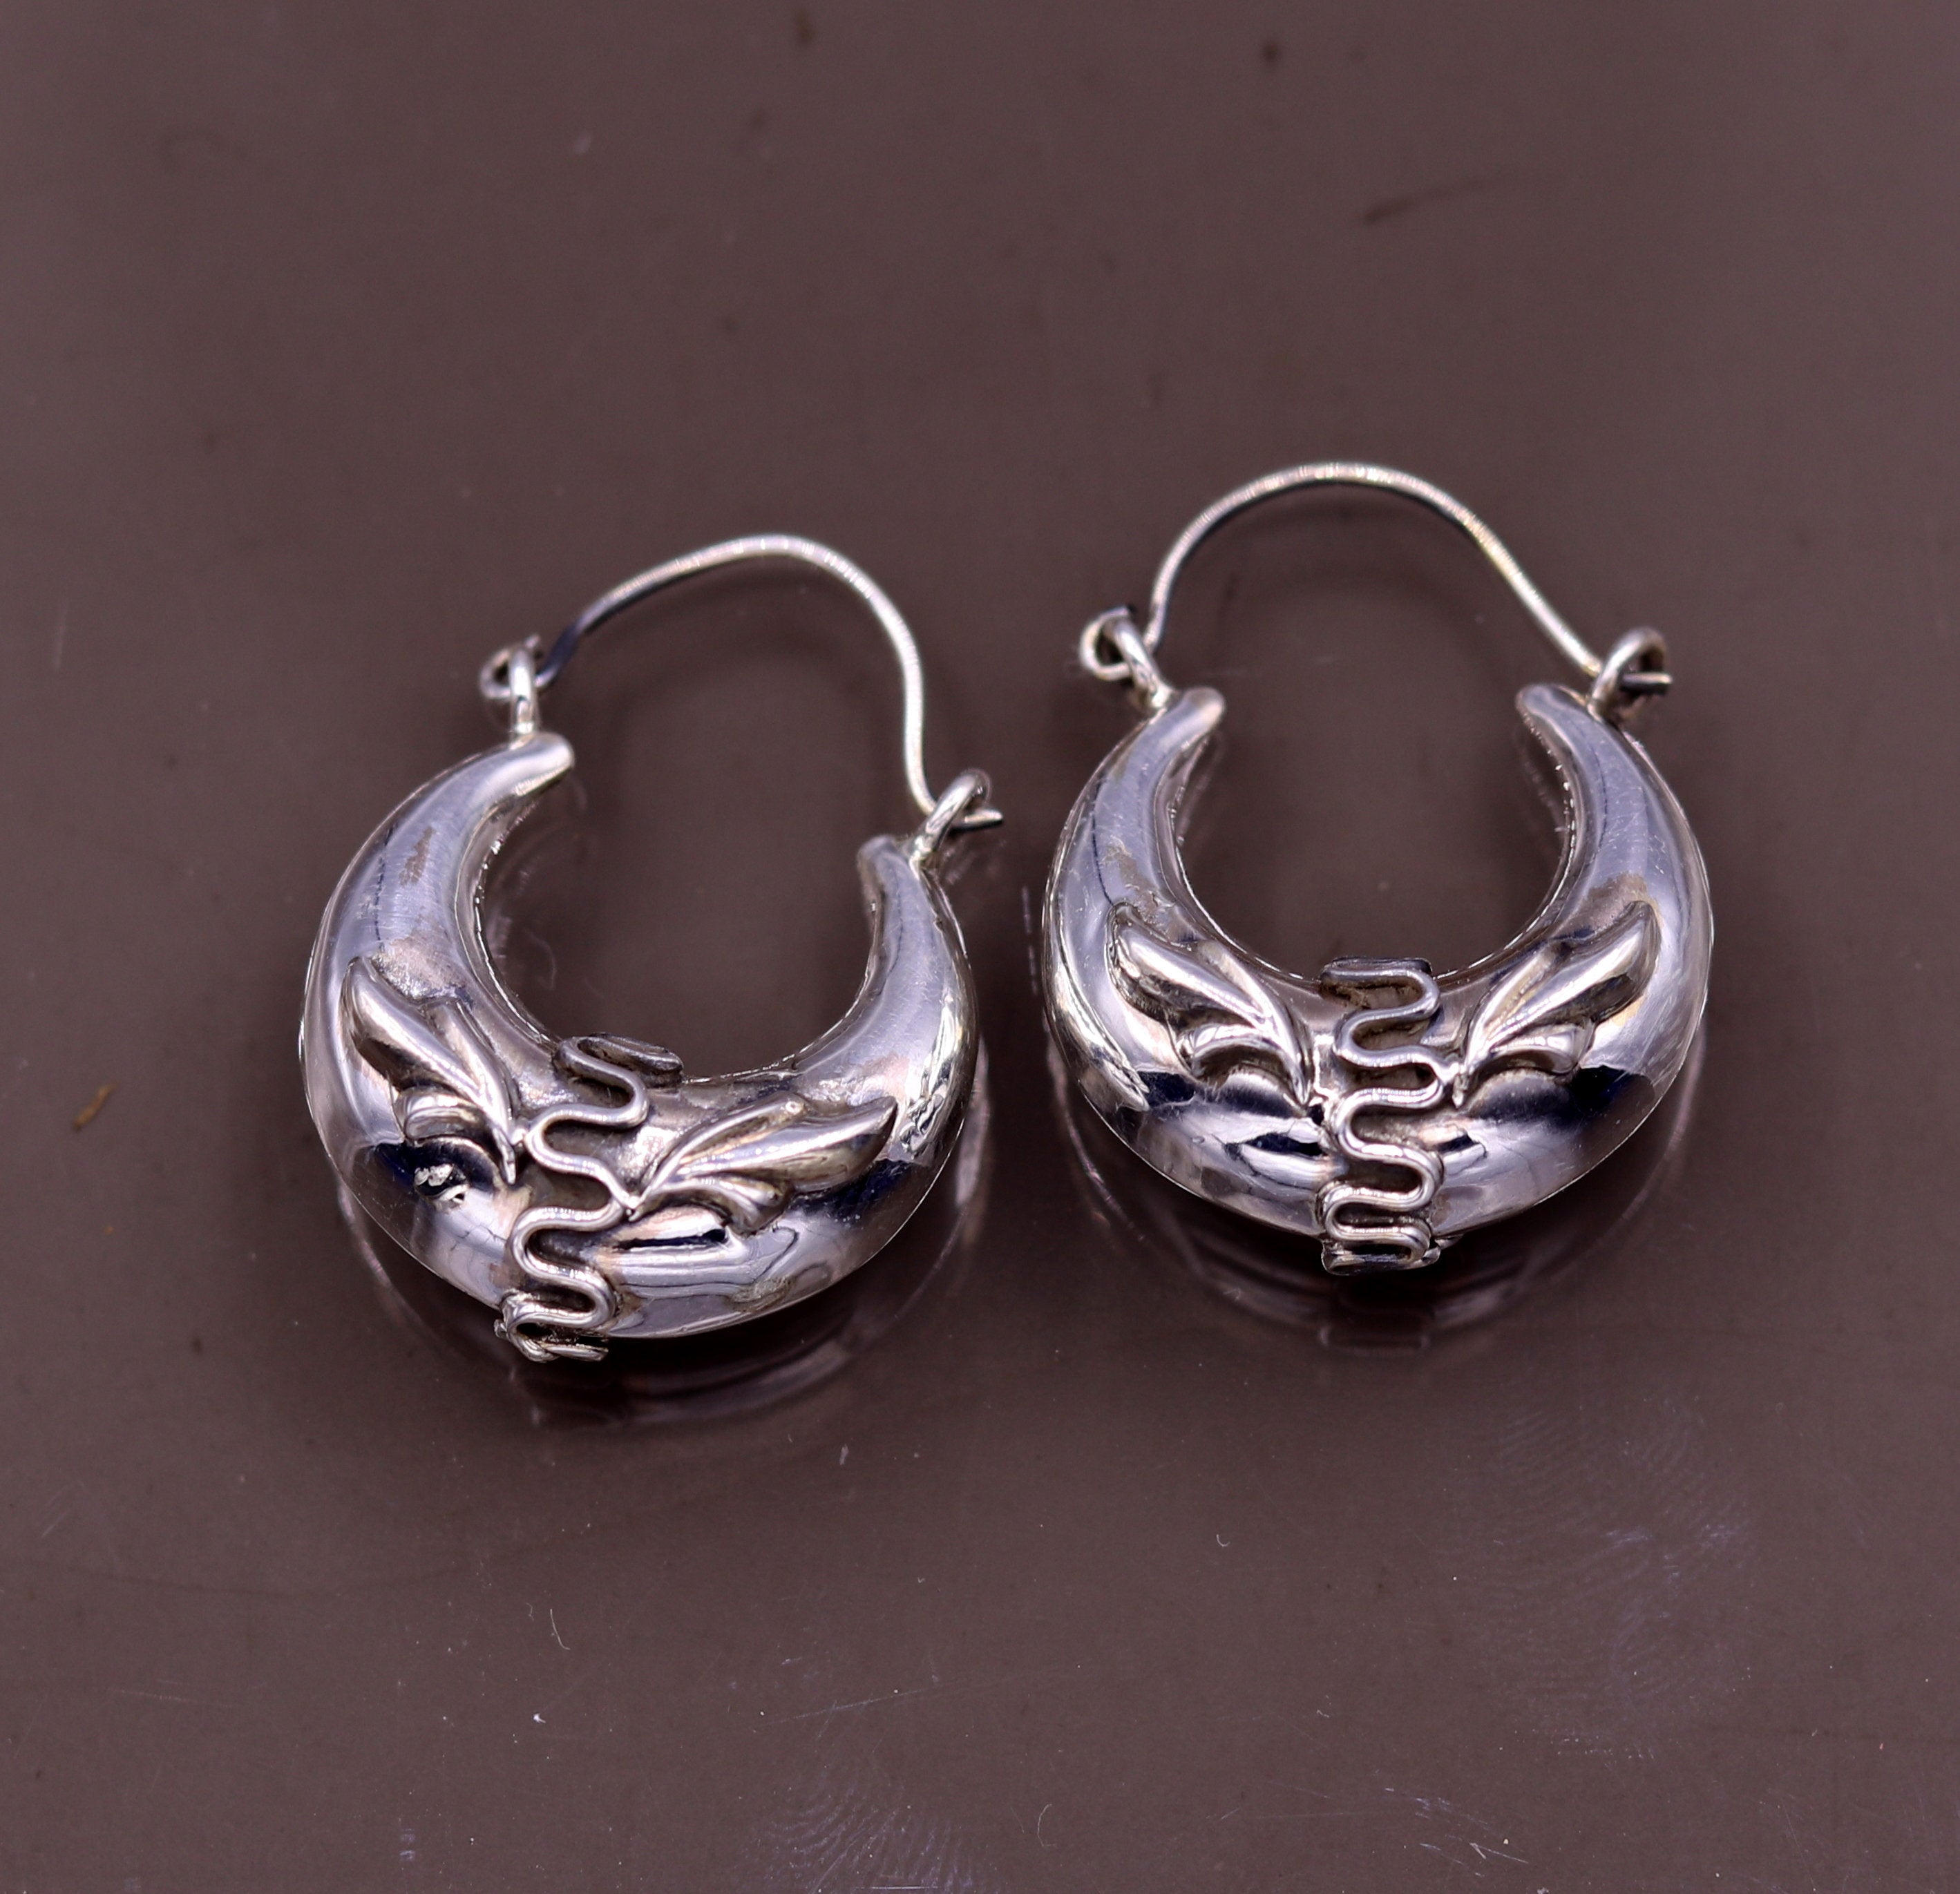 Silver Bali Hoop Heart Earrings online for young girls – Silverlinings